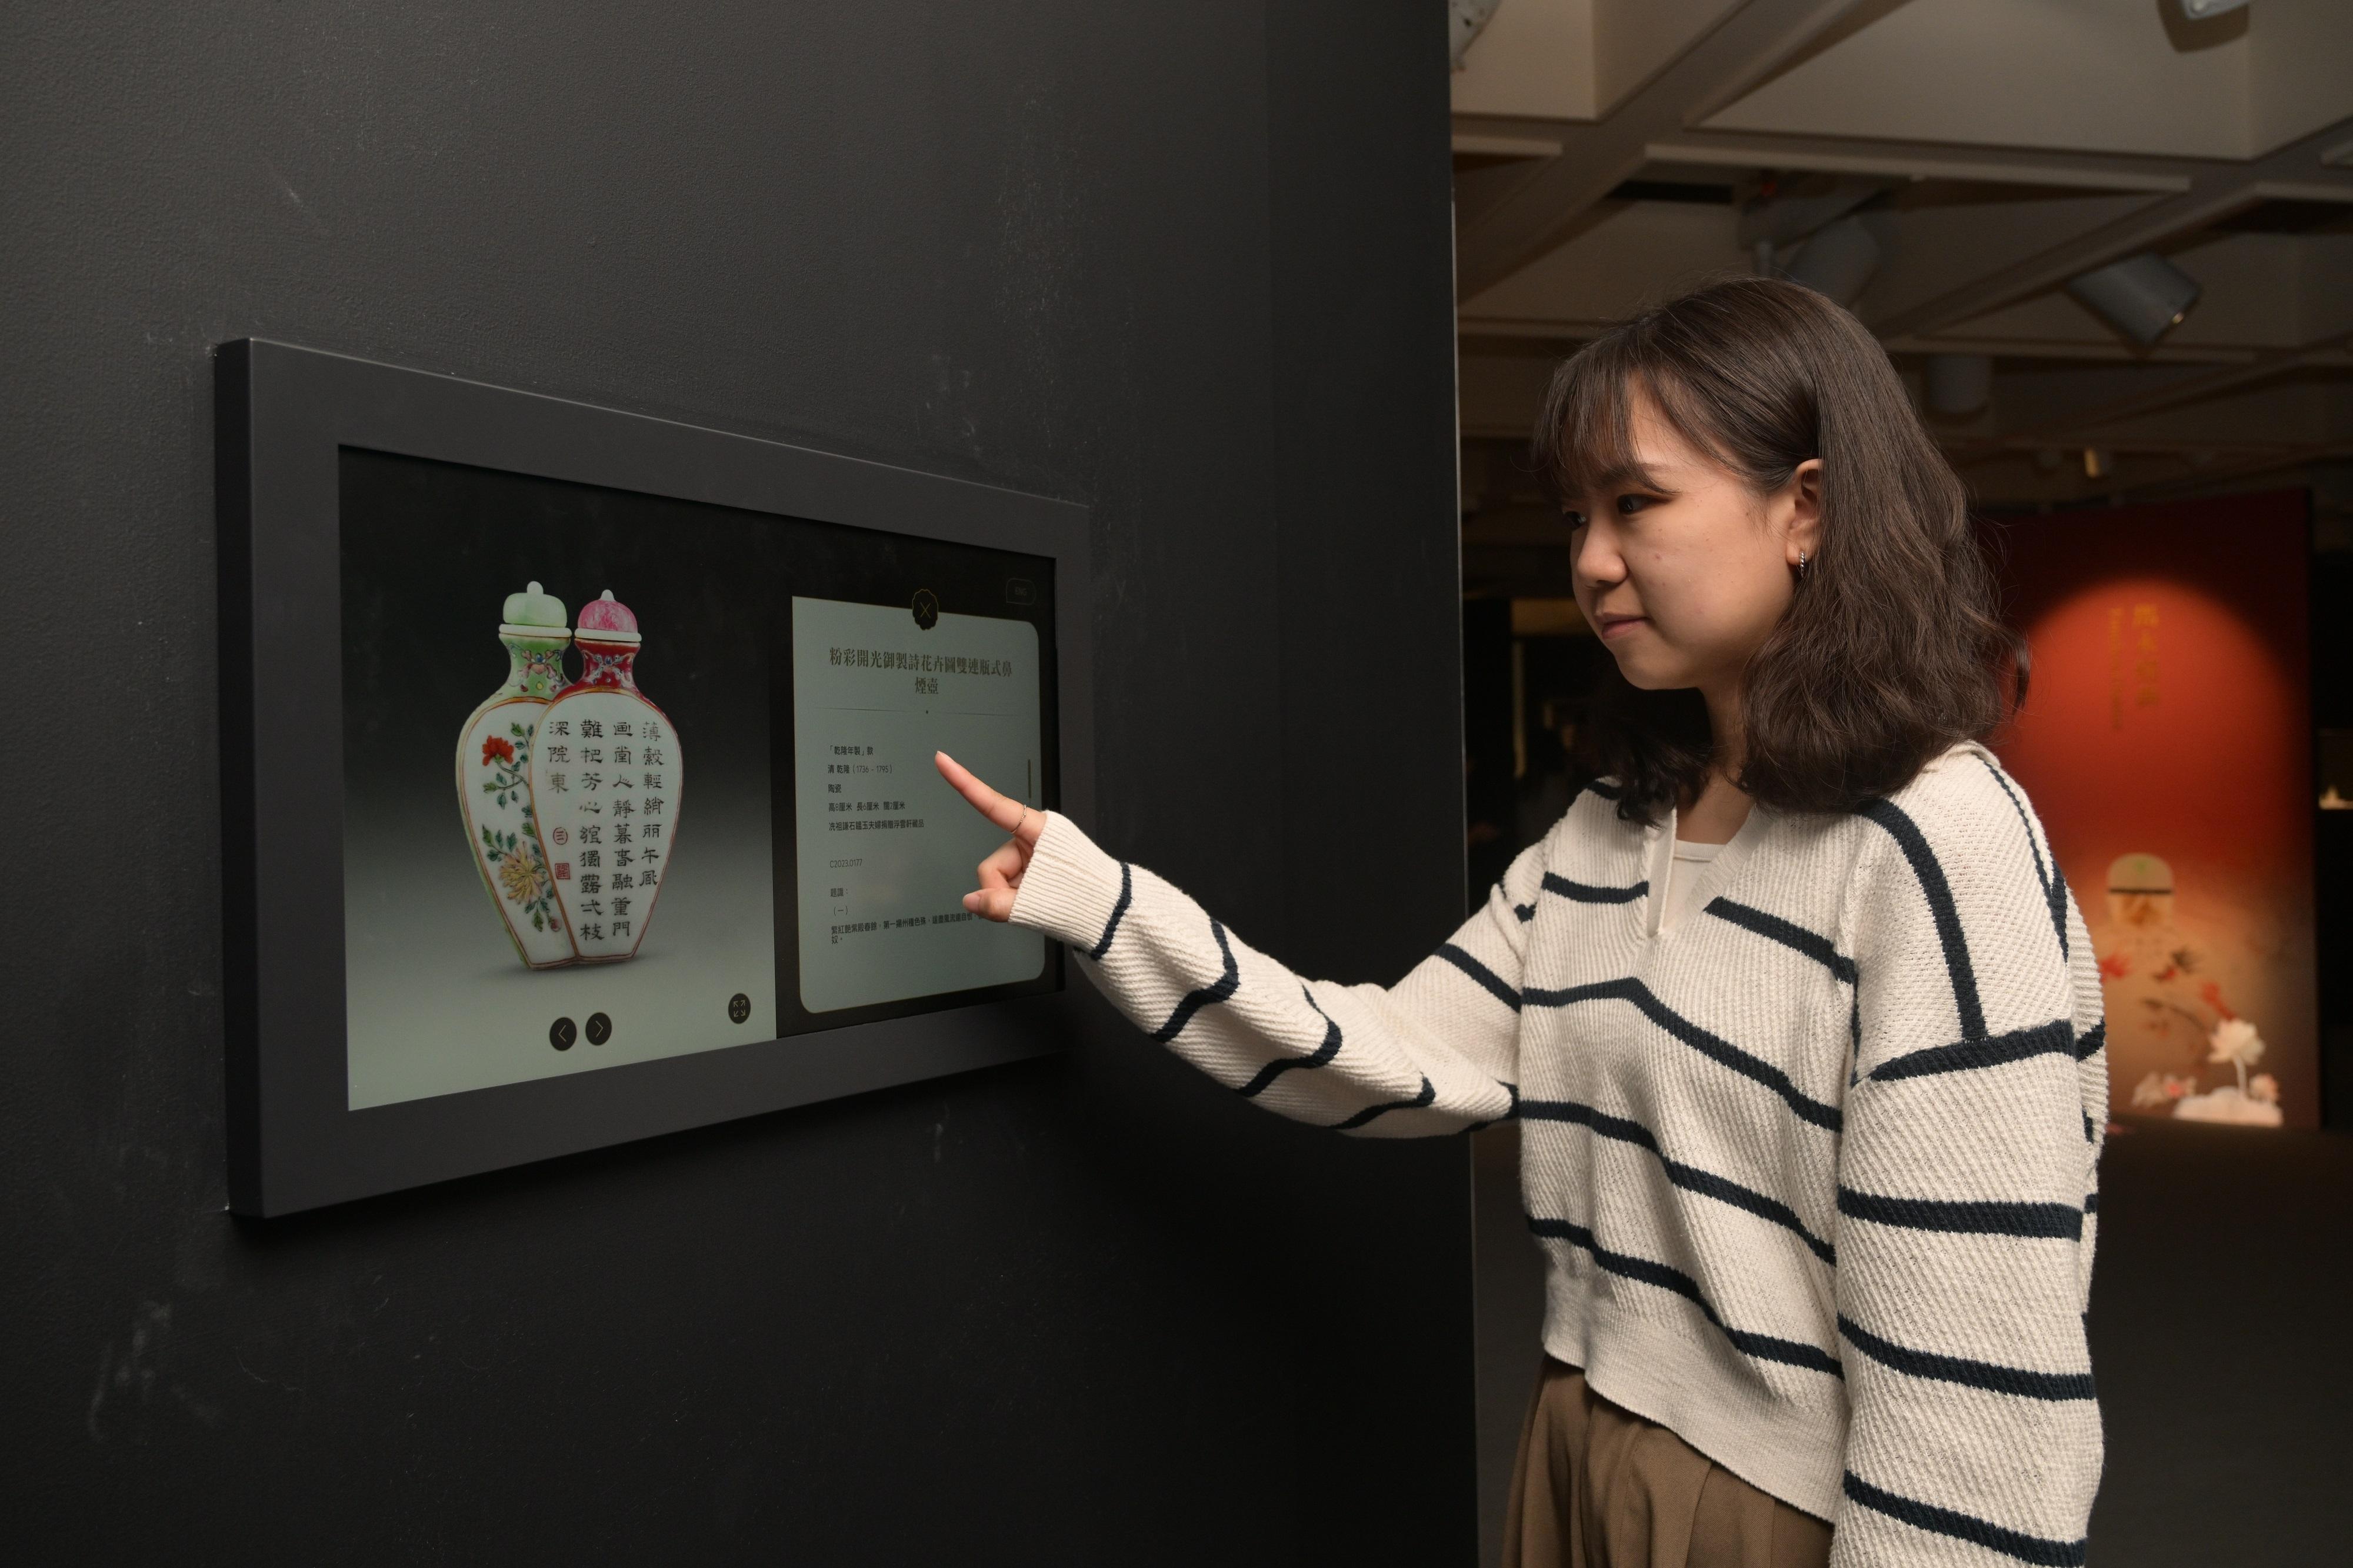 展廳內互動裝置，讓觀眾查閱展品資料及欣賞展品細部。